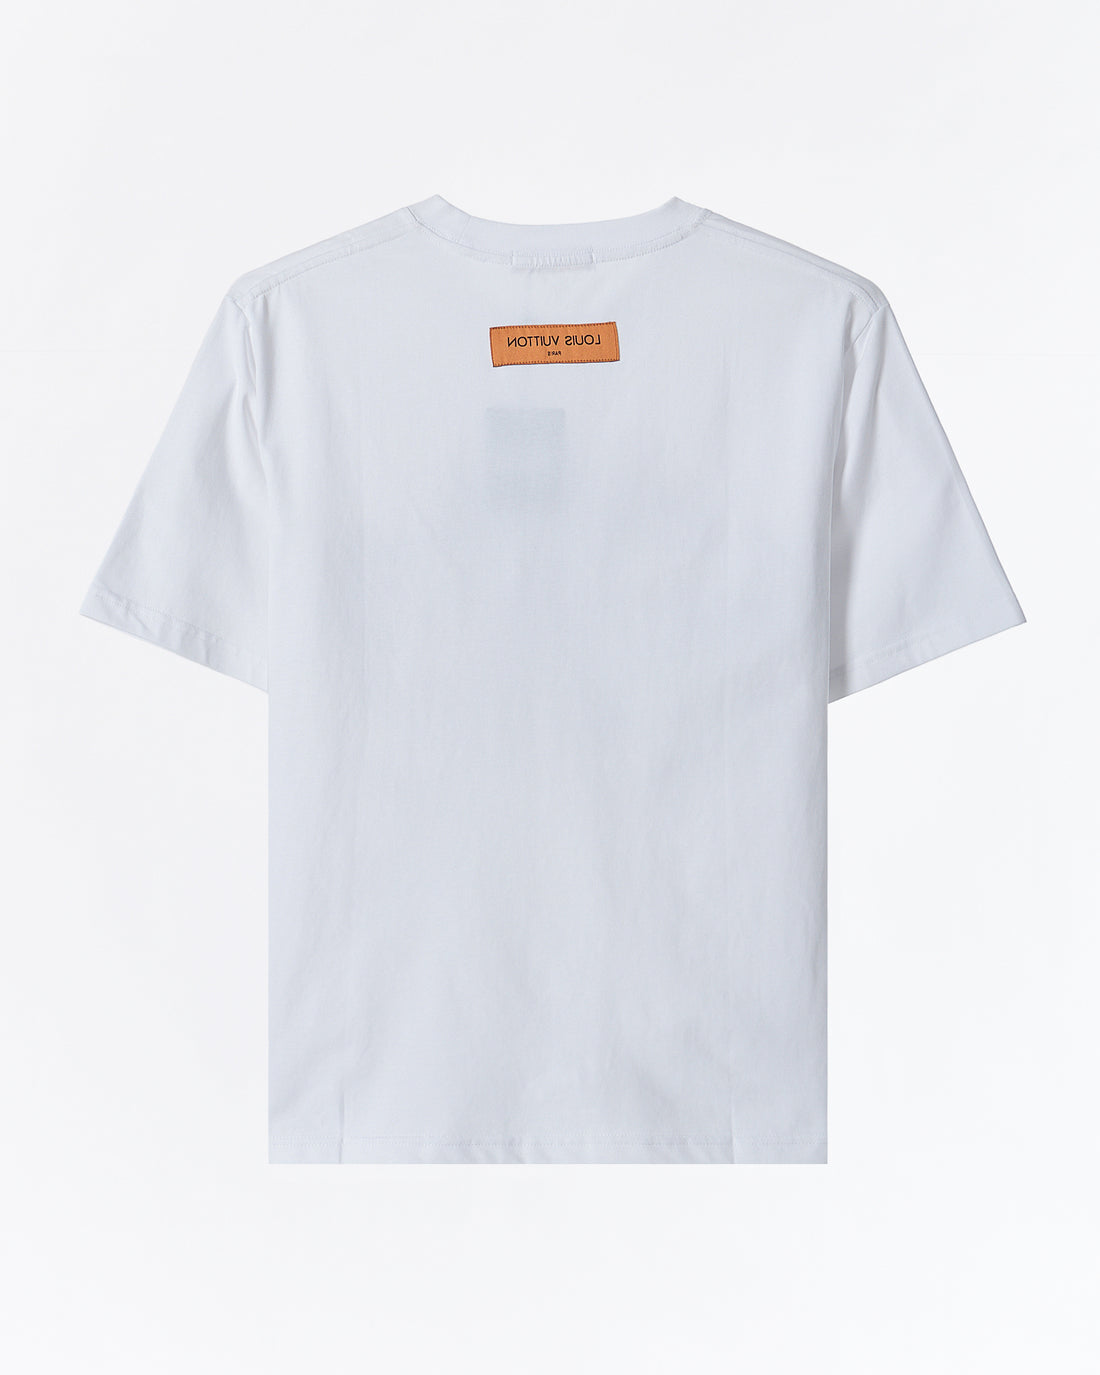 사이키델릭 플라워 프린트 남성 티셔츠 48.90